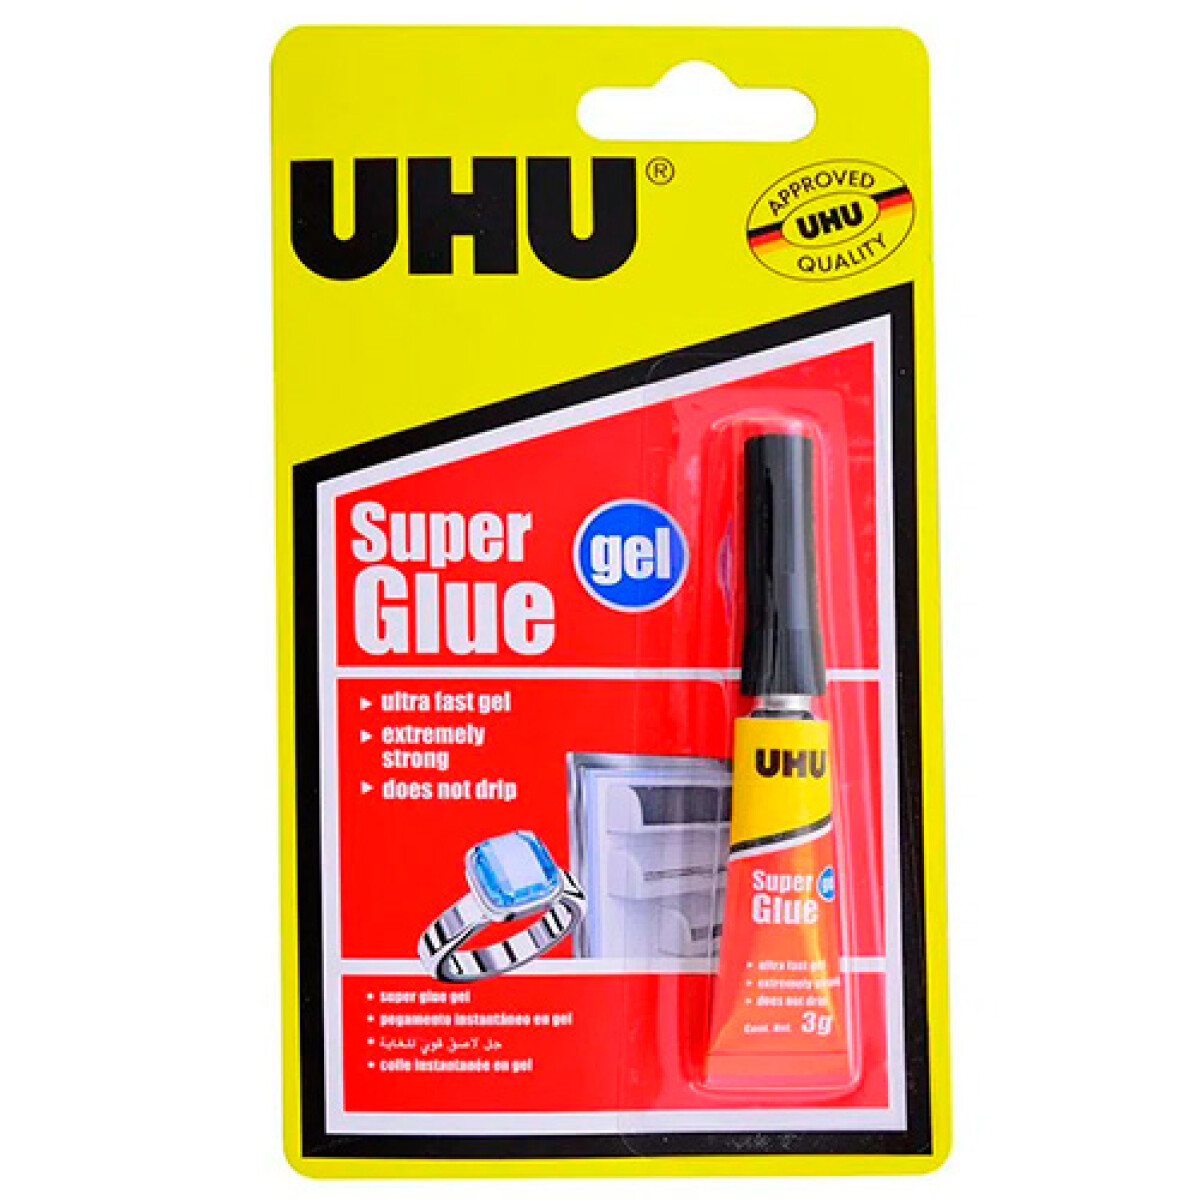 Pegamento Instantáneo Uhu Súper Glue Gel 3G - 001 